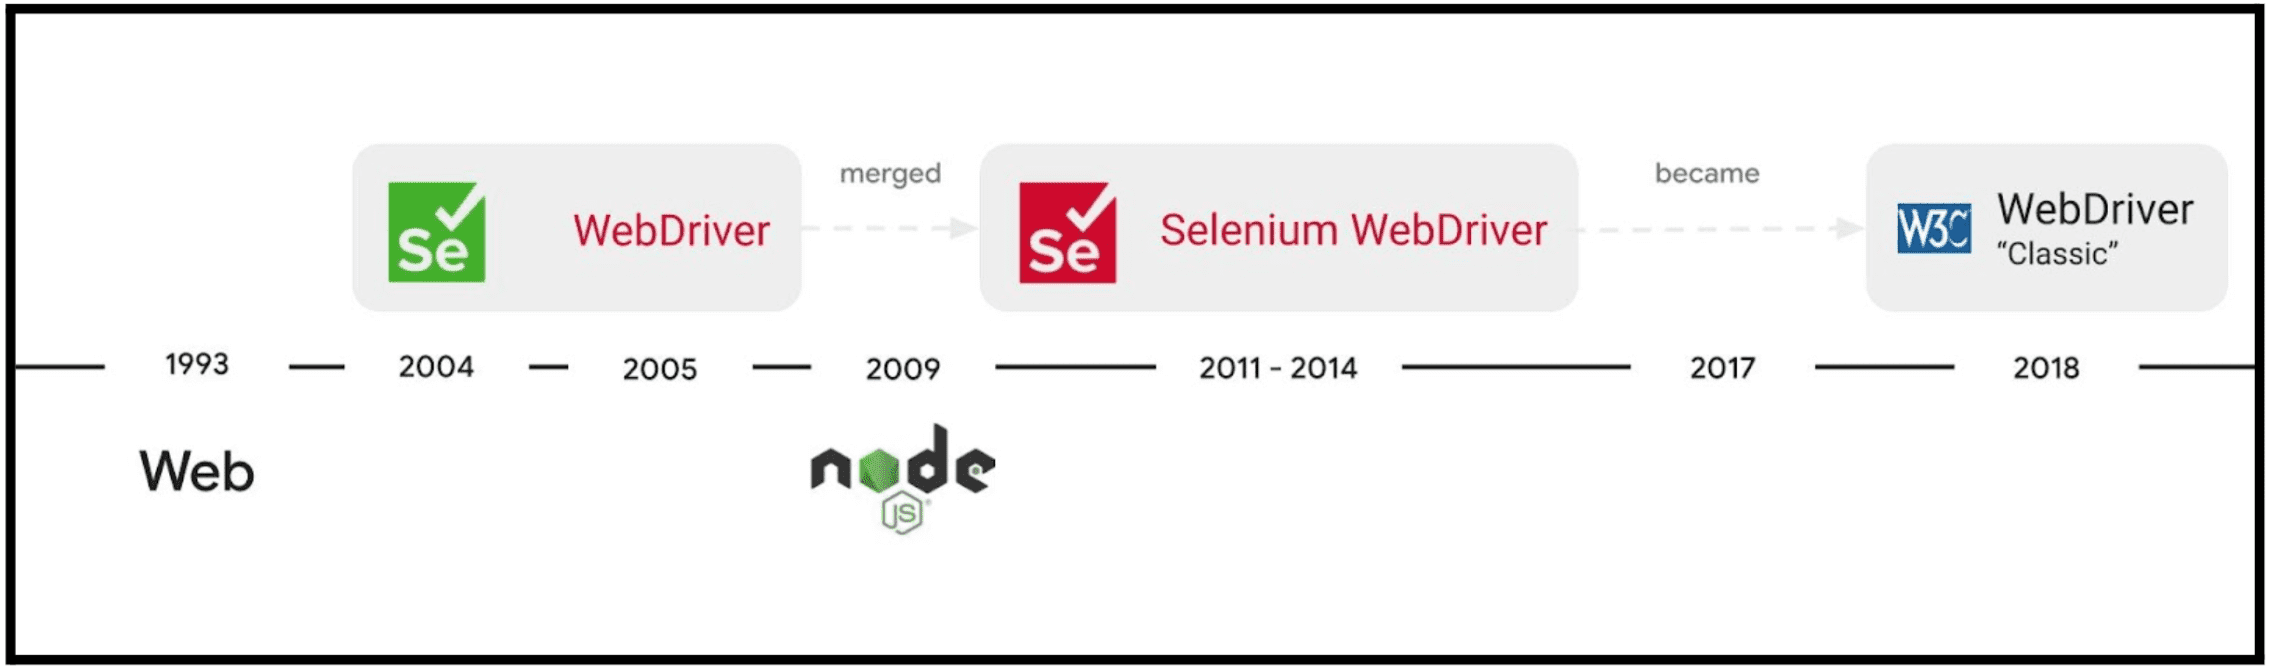 تطور مشروع Selenium WebDriver.